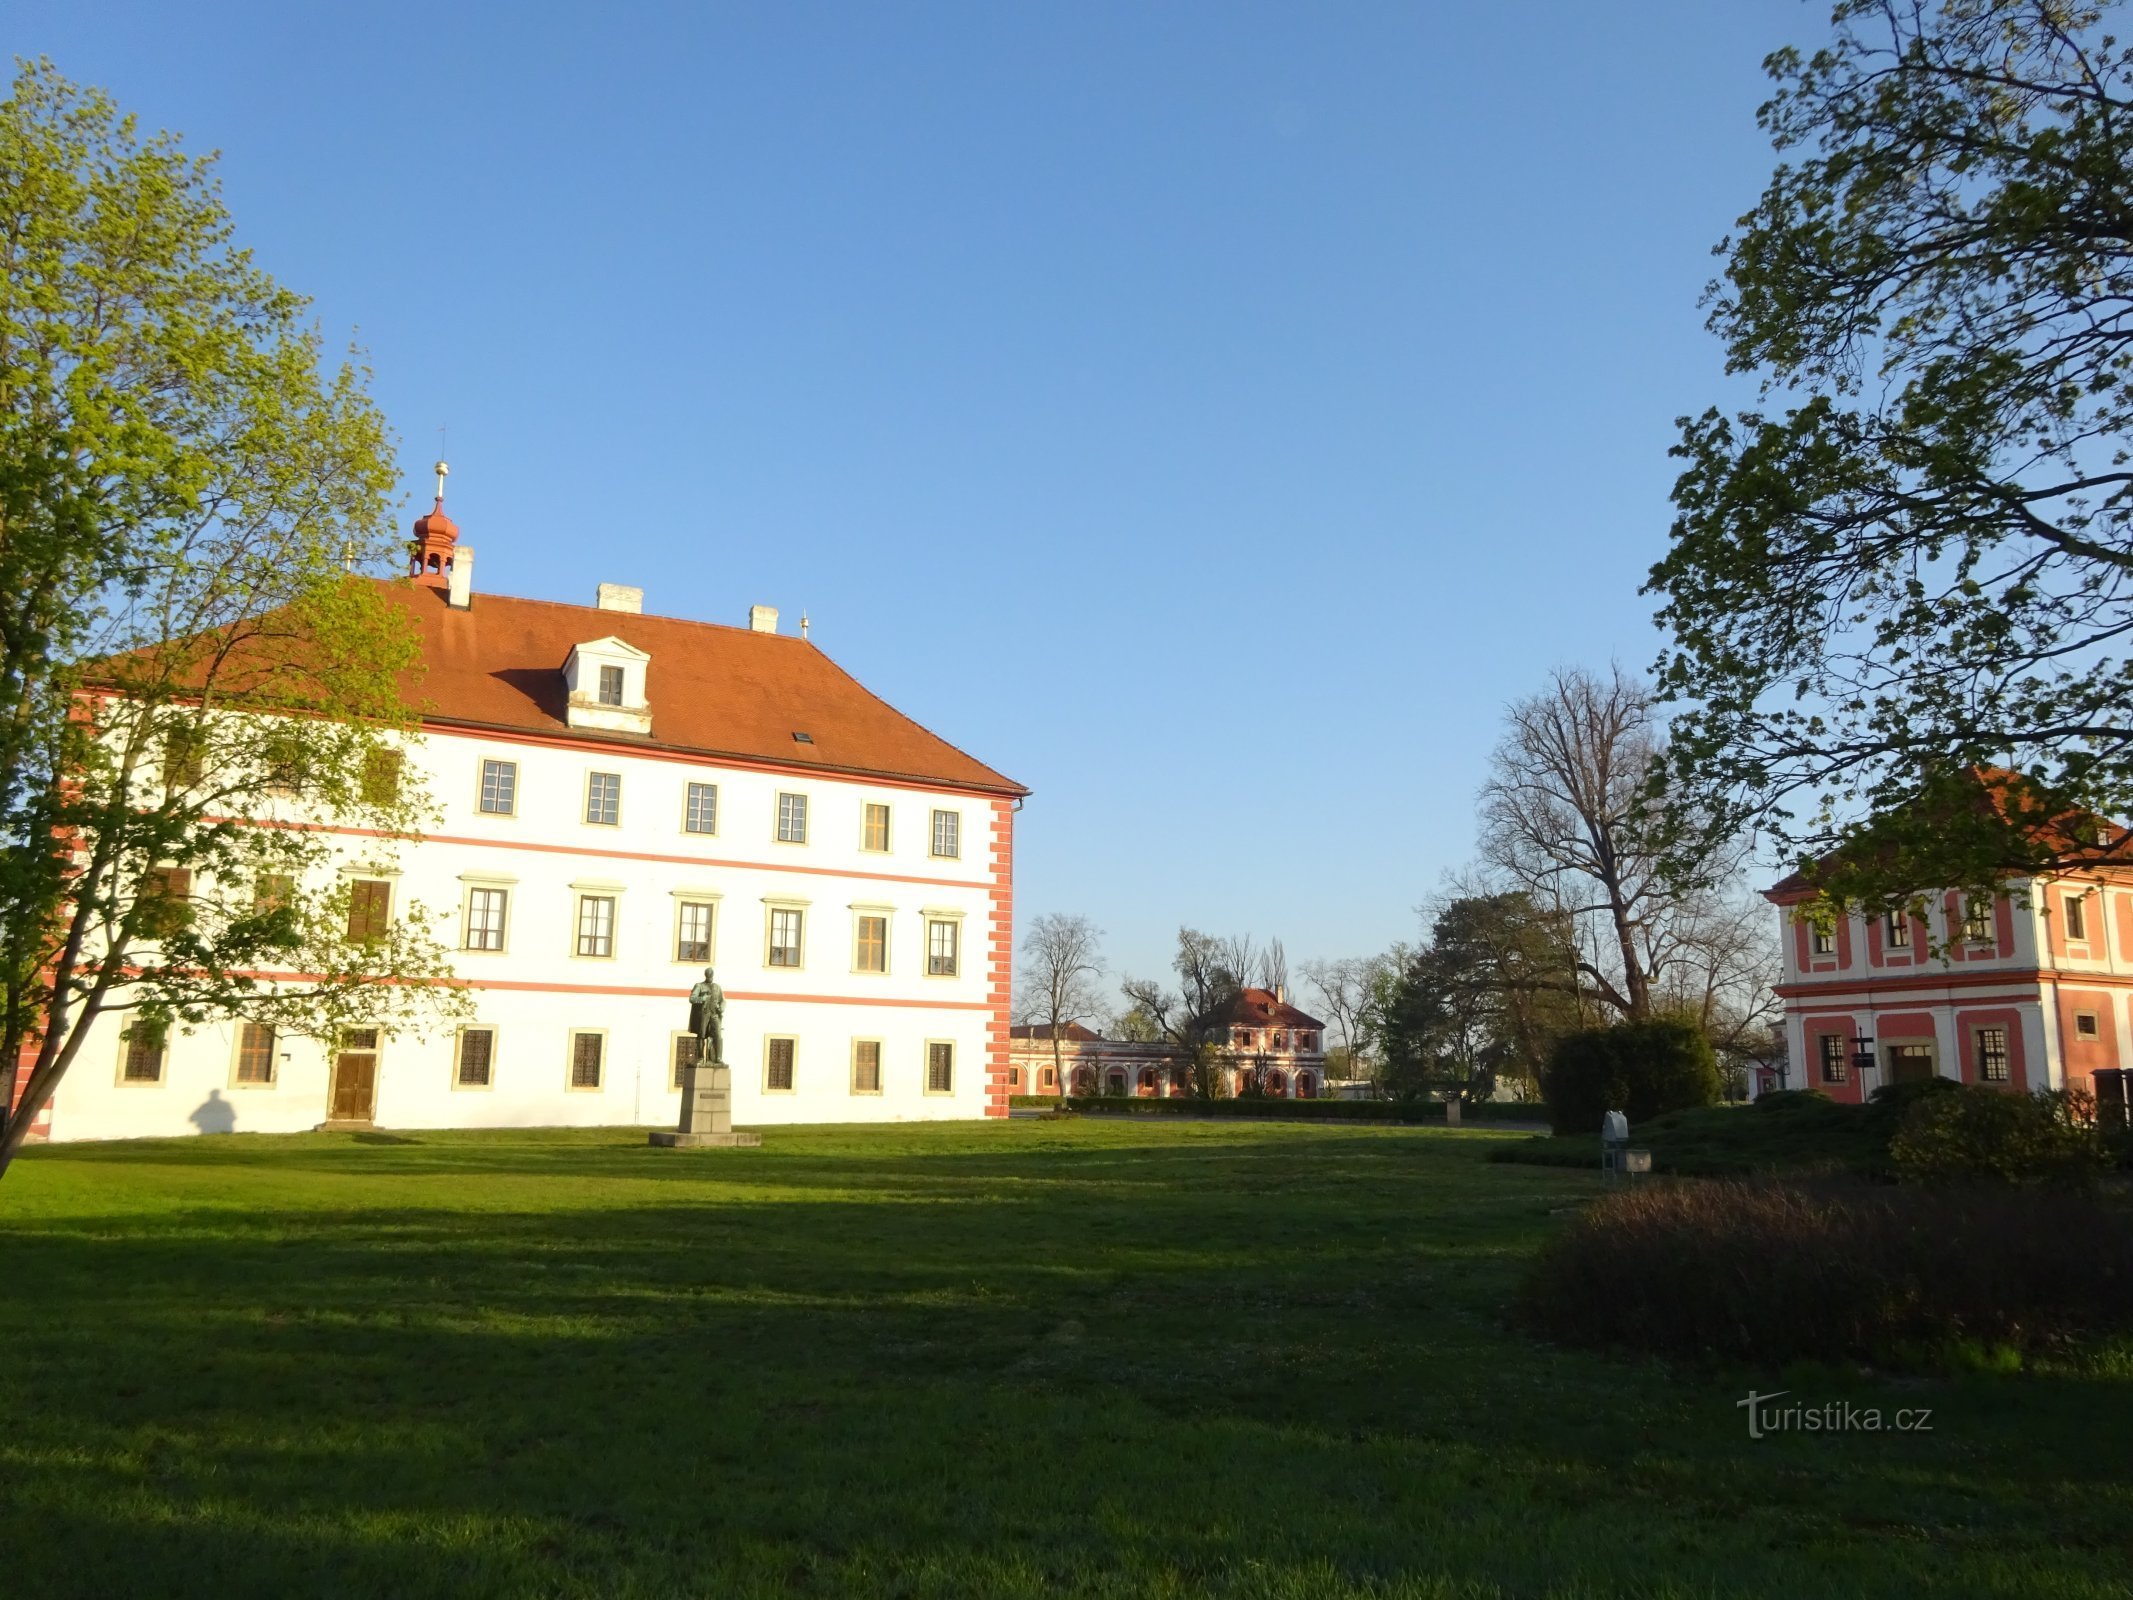 Grad Mnichovo Hradiště in grajski park